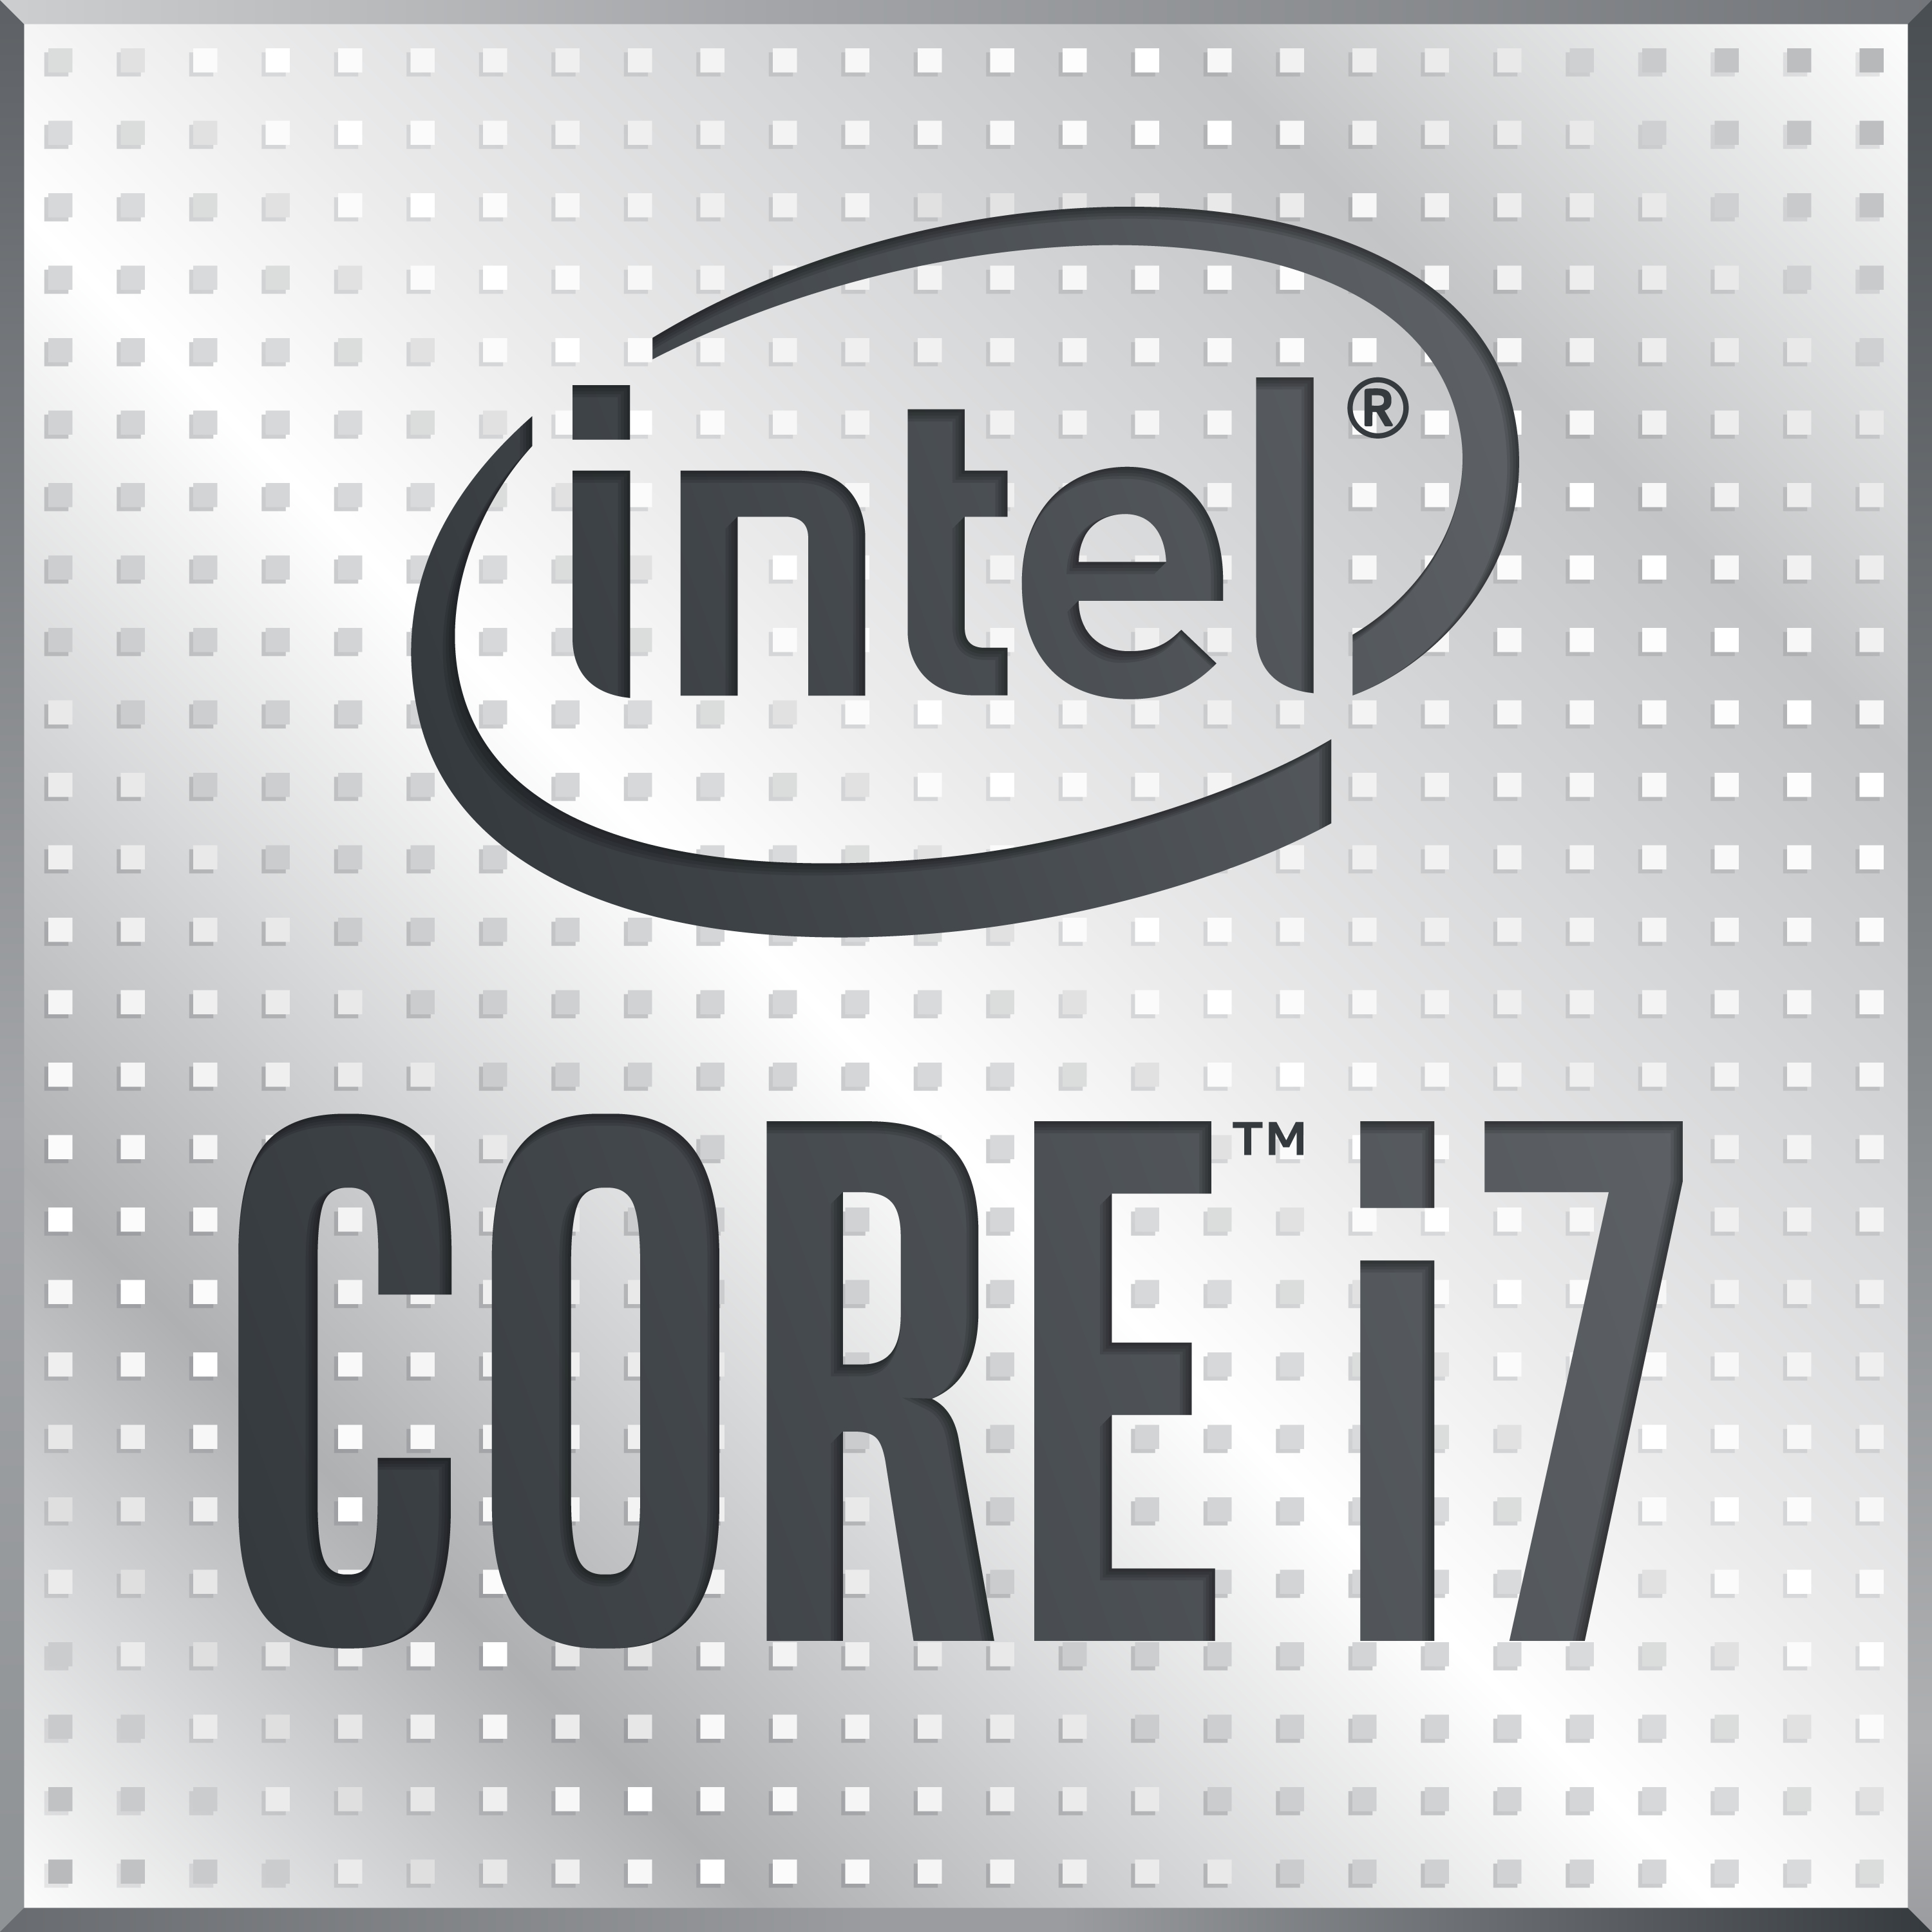 CPU INTEL I7-10700 TRAY 2,9GHz 1200 10GEN 8C 16MB 16T 14NM 65W UHD630